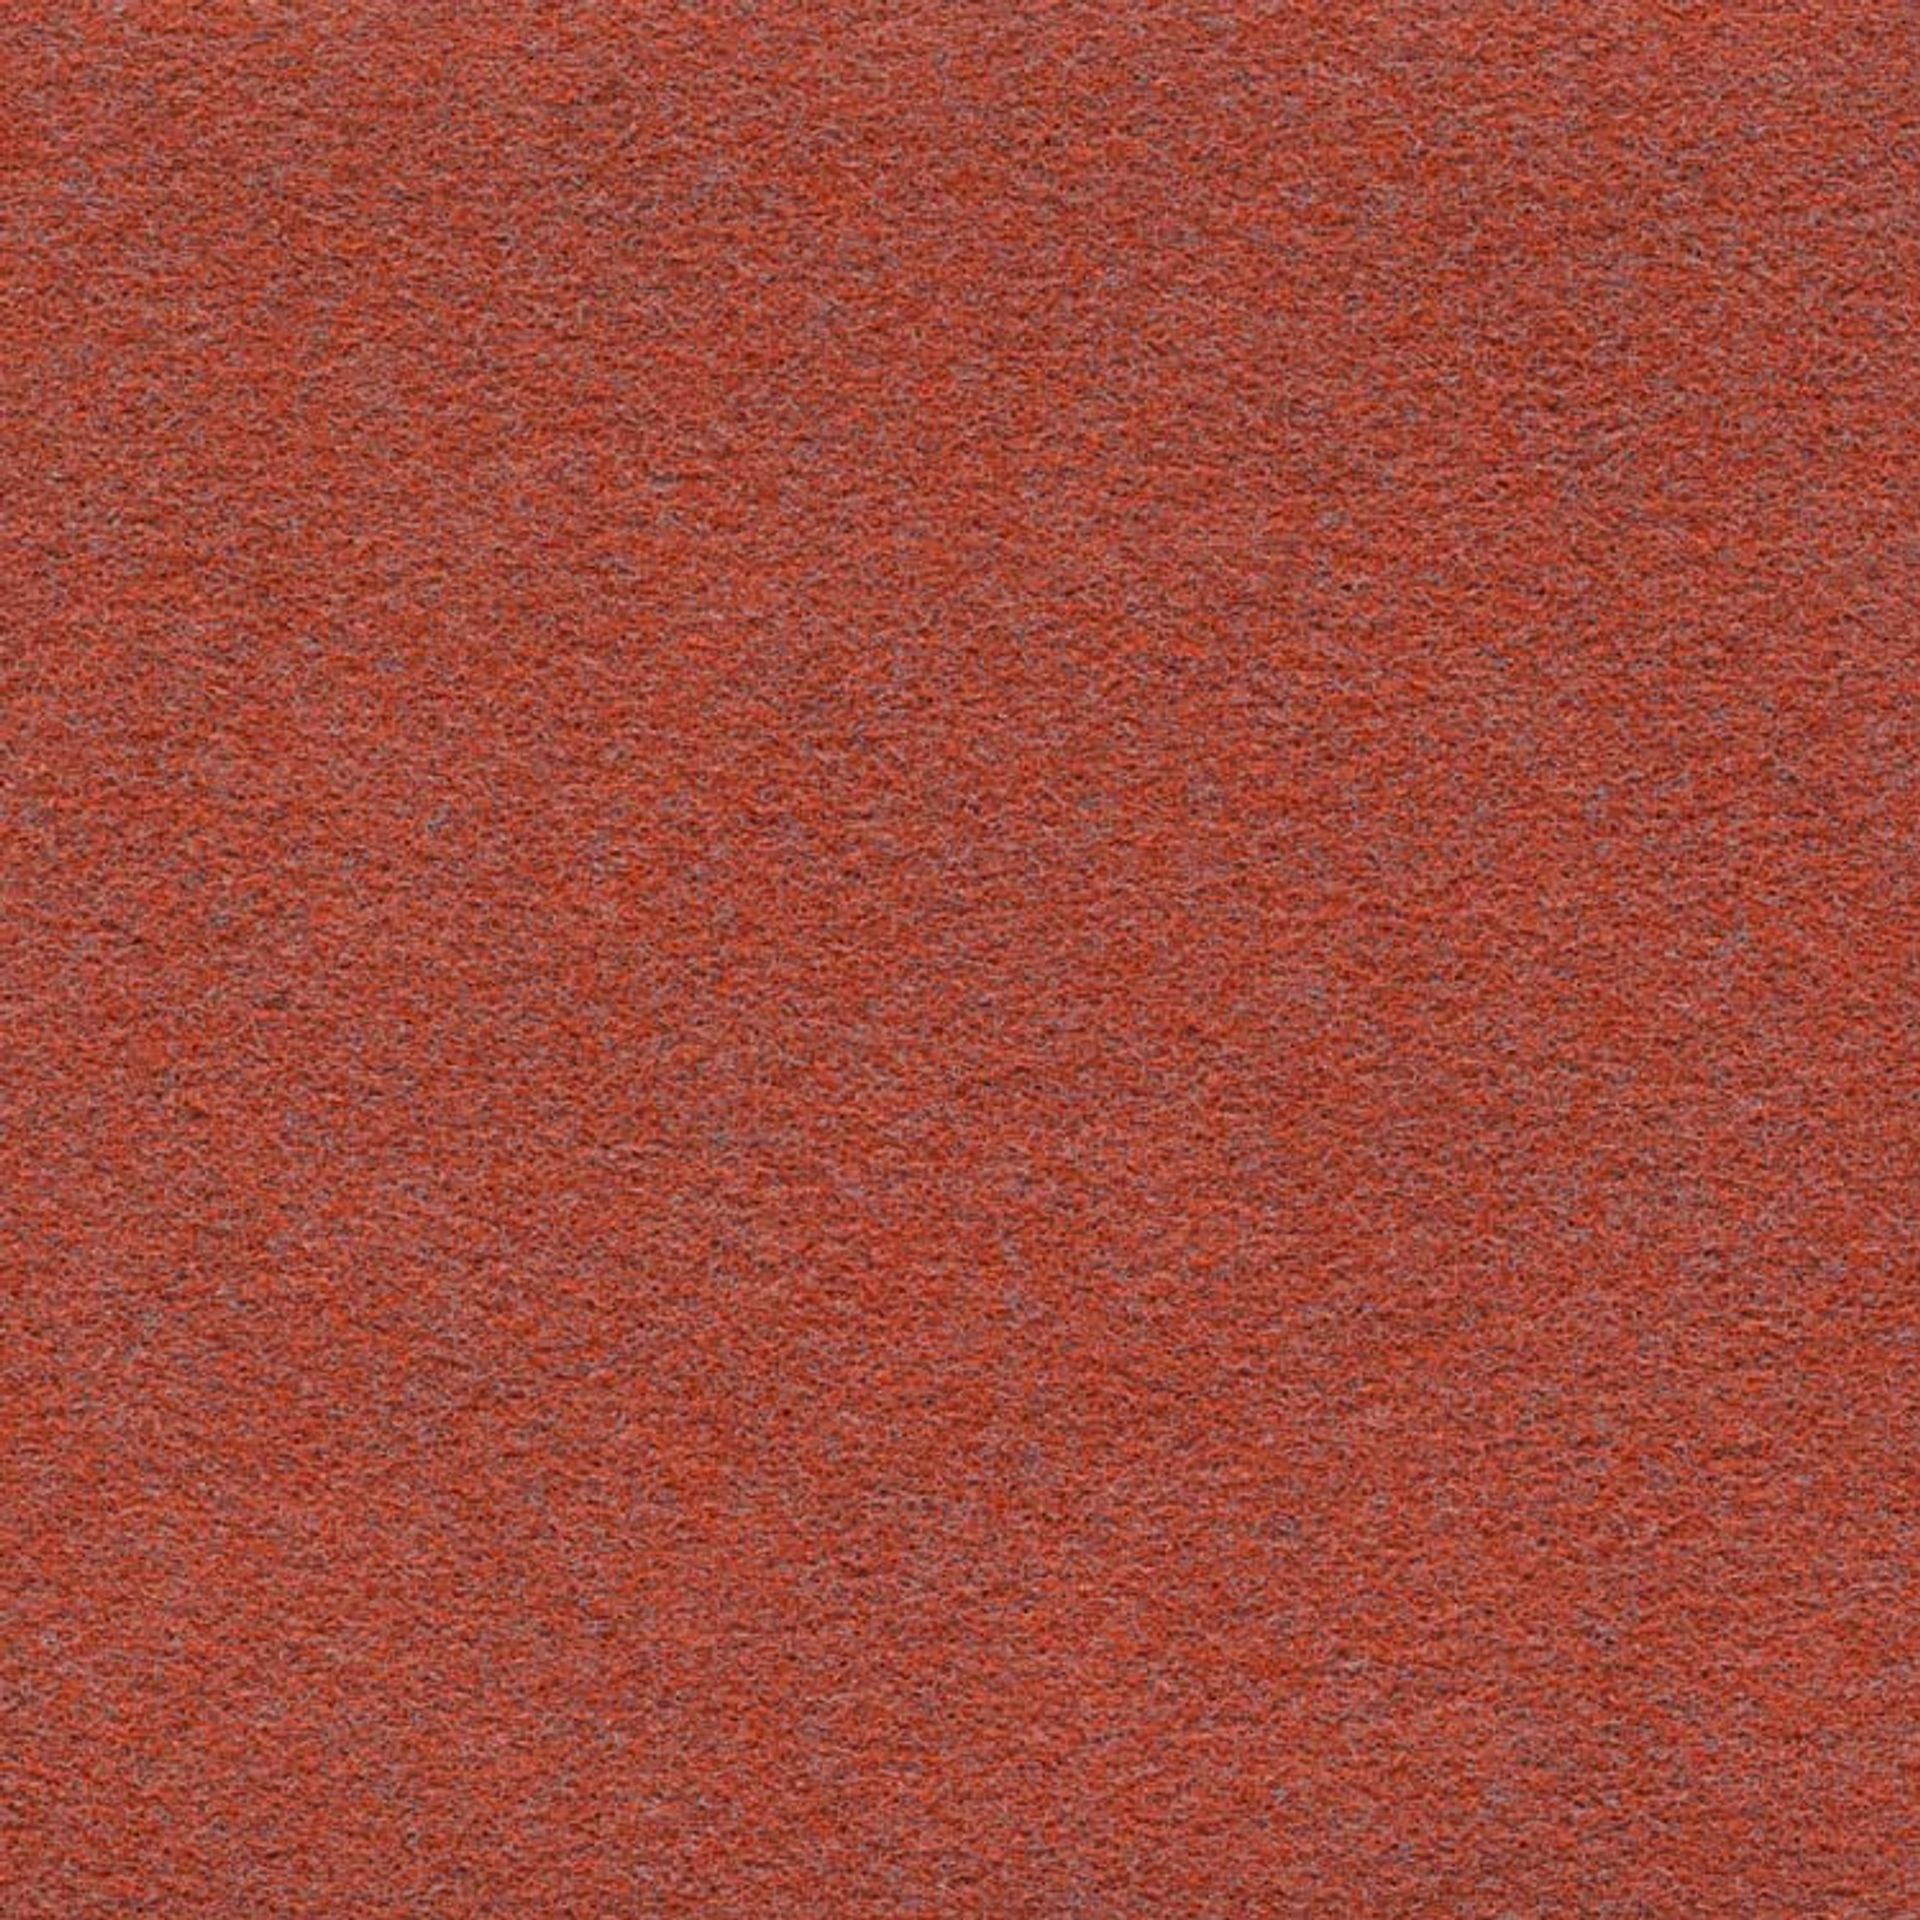 Teppichfliese 25 x 100 cm Nadelvlies FINETT DIMENSION farbige göße p509206 Koralle